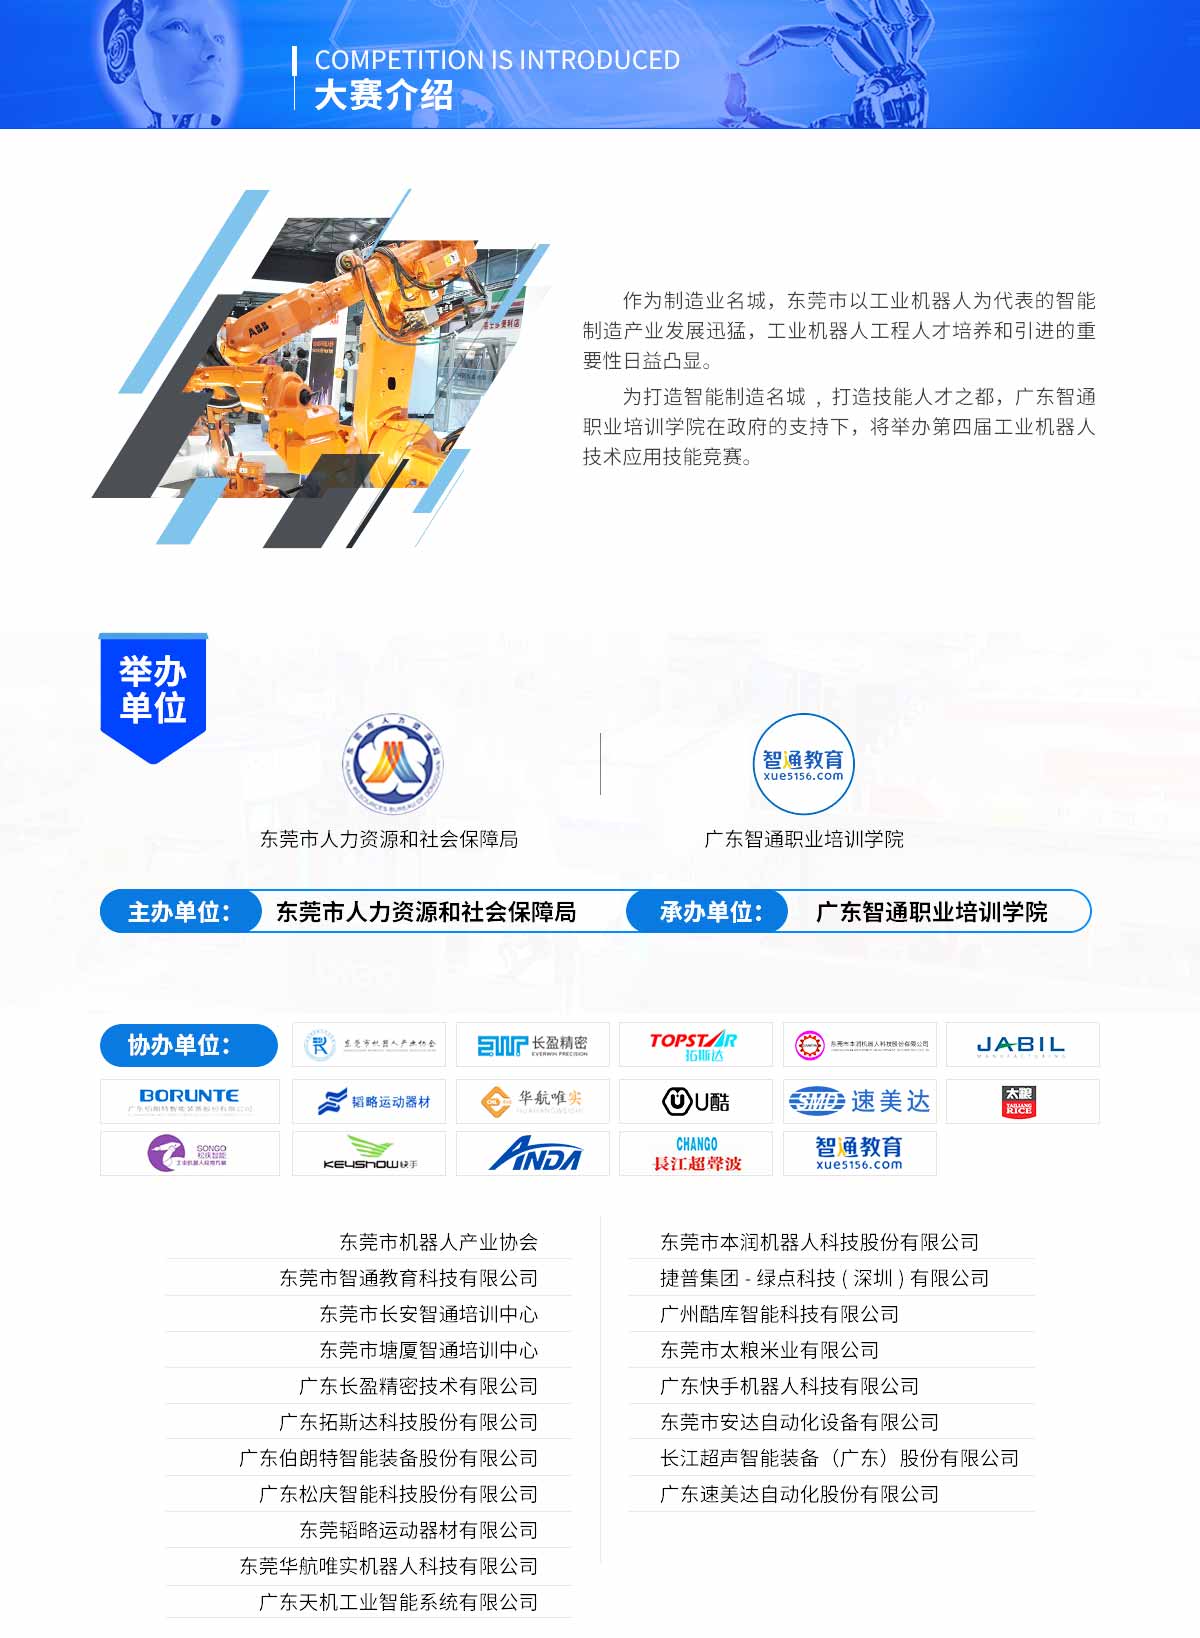 2019年9月22日東莞市第四屆工業機器人大賽簡介03